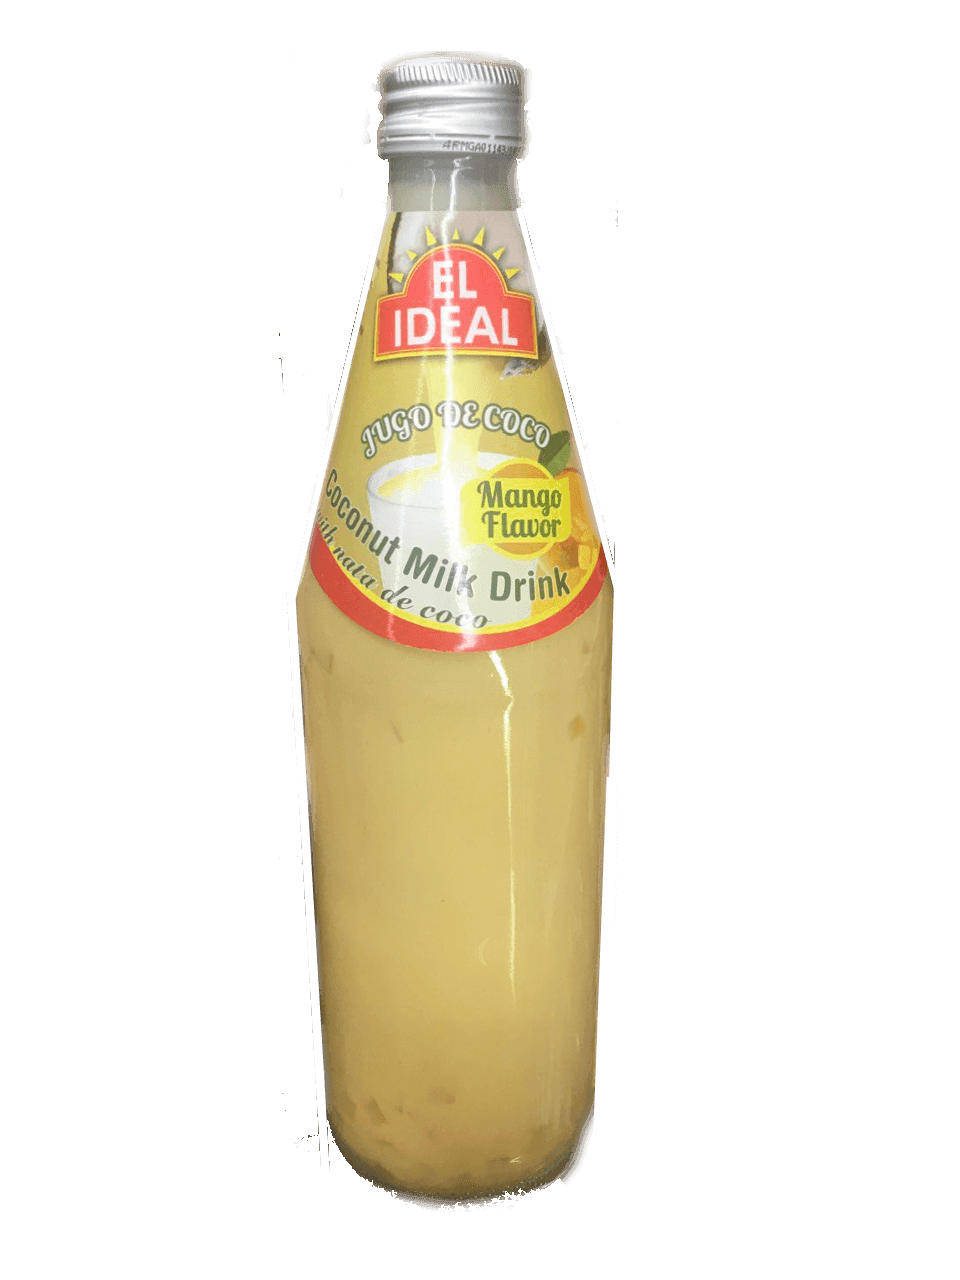 El Ideal - Coconut Milk Drink Mango Flavor 17oz